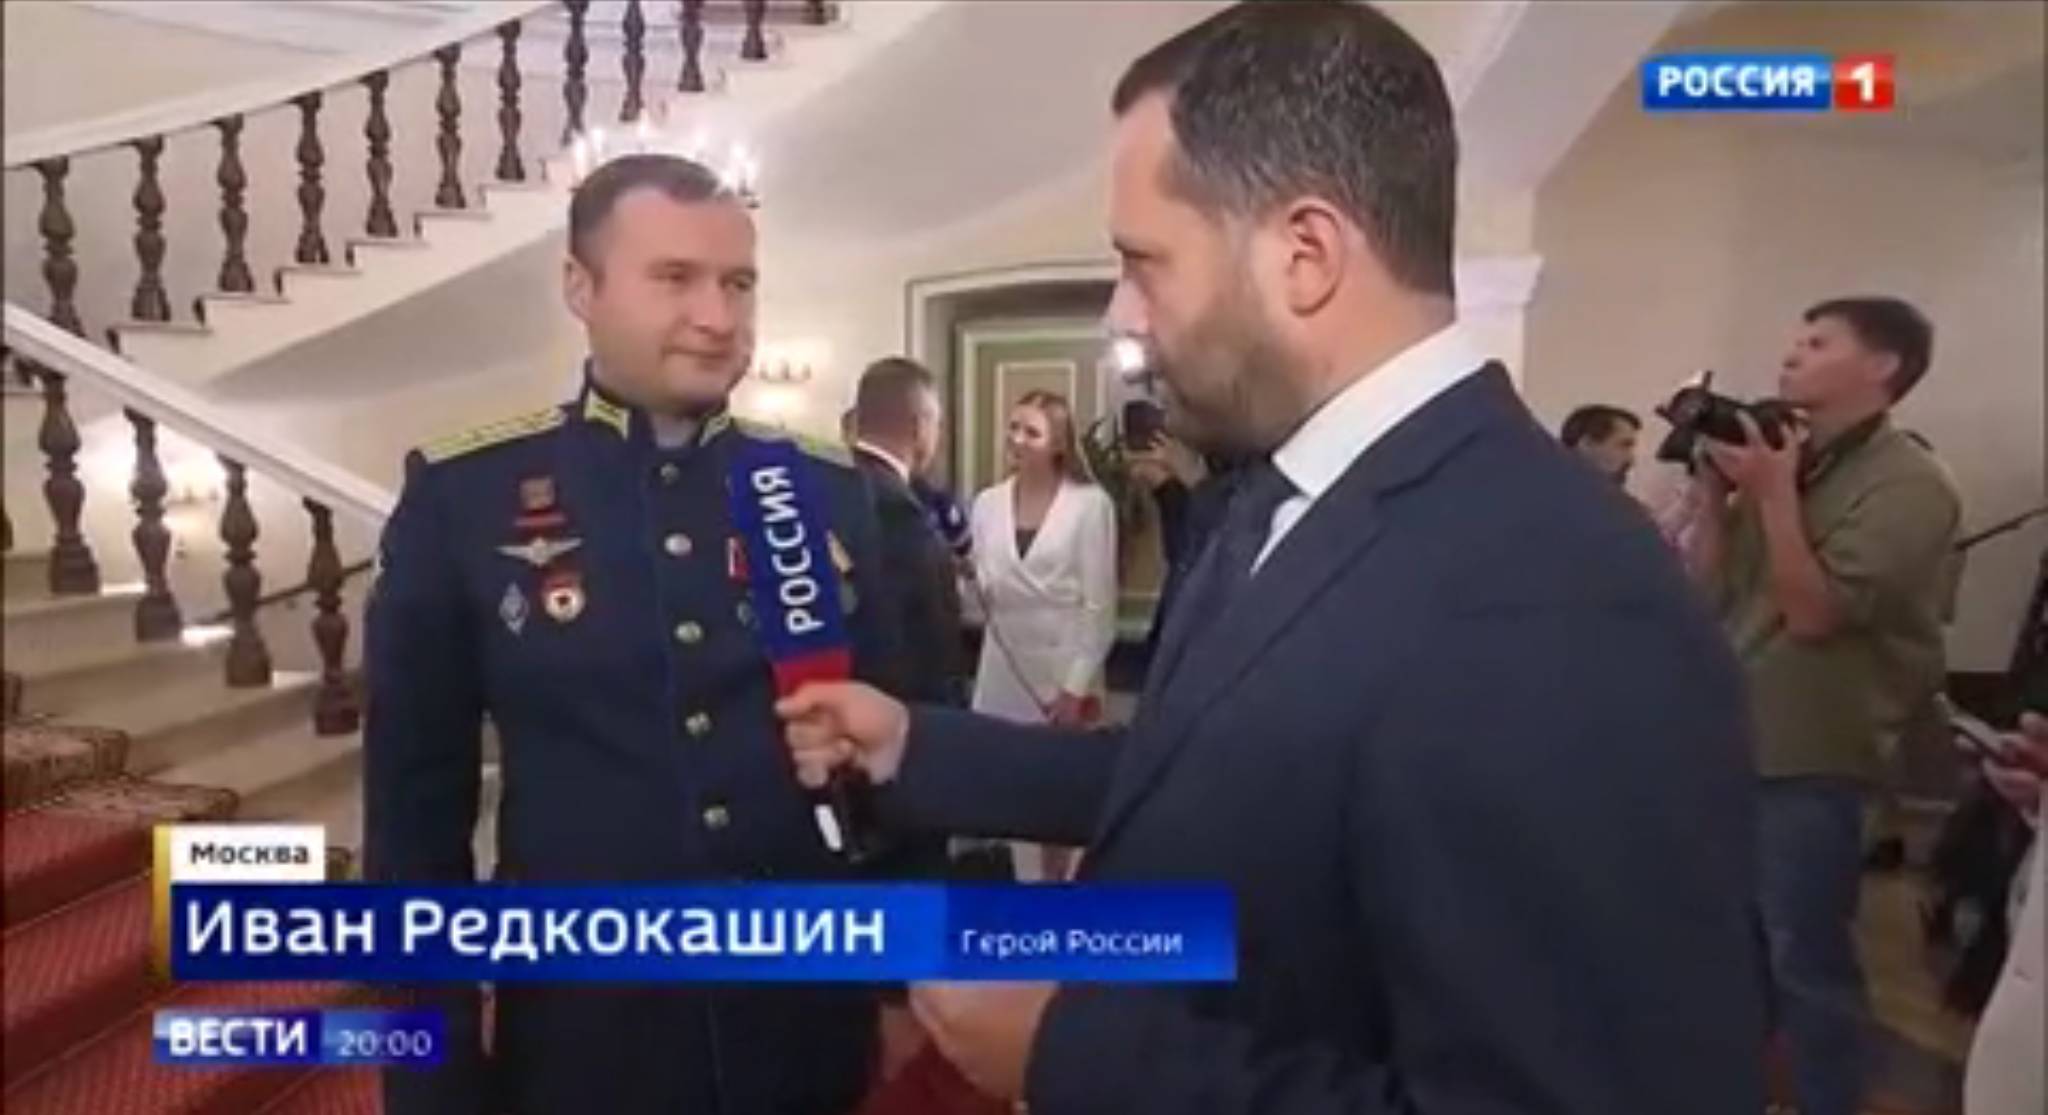 Męzczyzna w galowym rosyjskim mundurze z odznaką pilota mówi do mikrofonu "Wiesti"